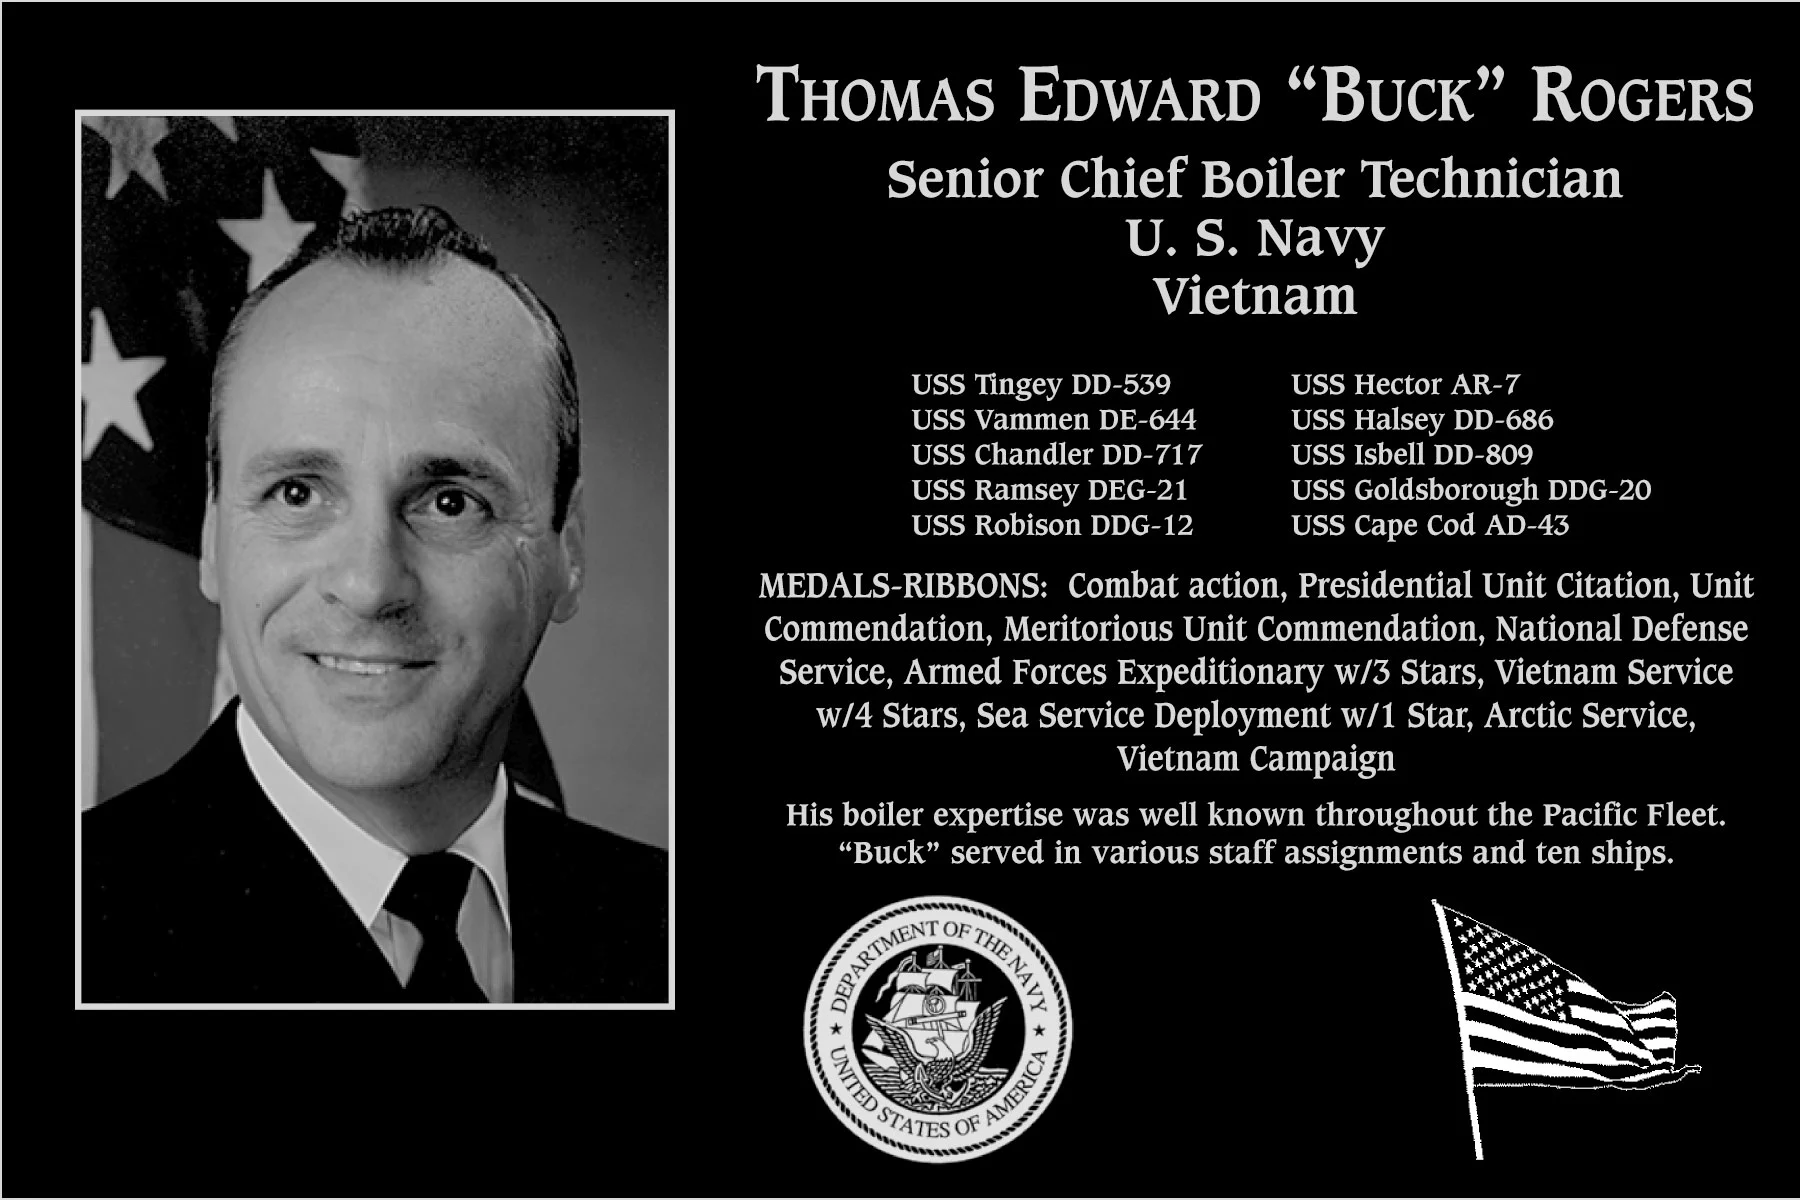 Thomas Edward "Buck" Rogers